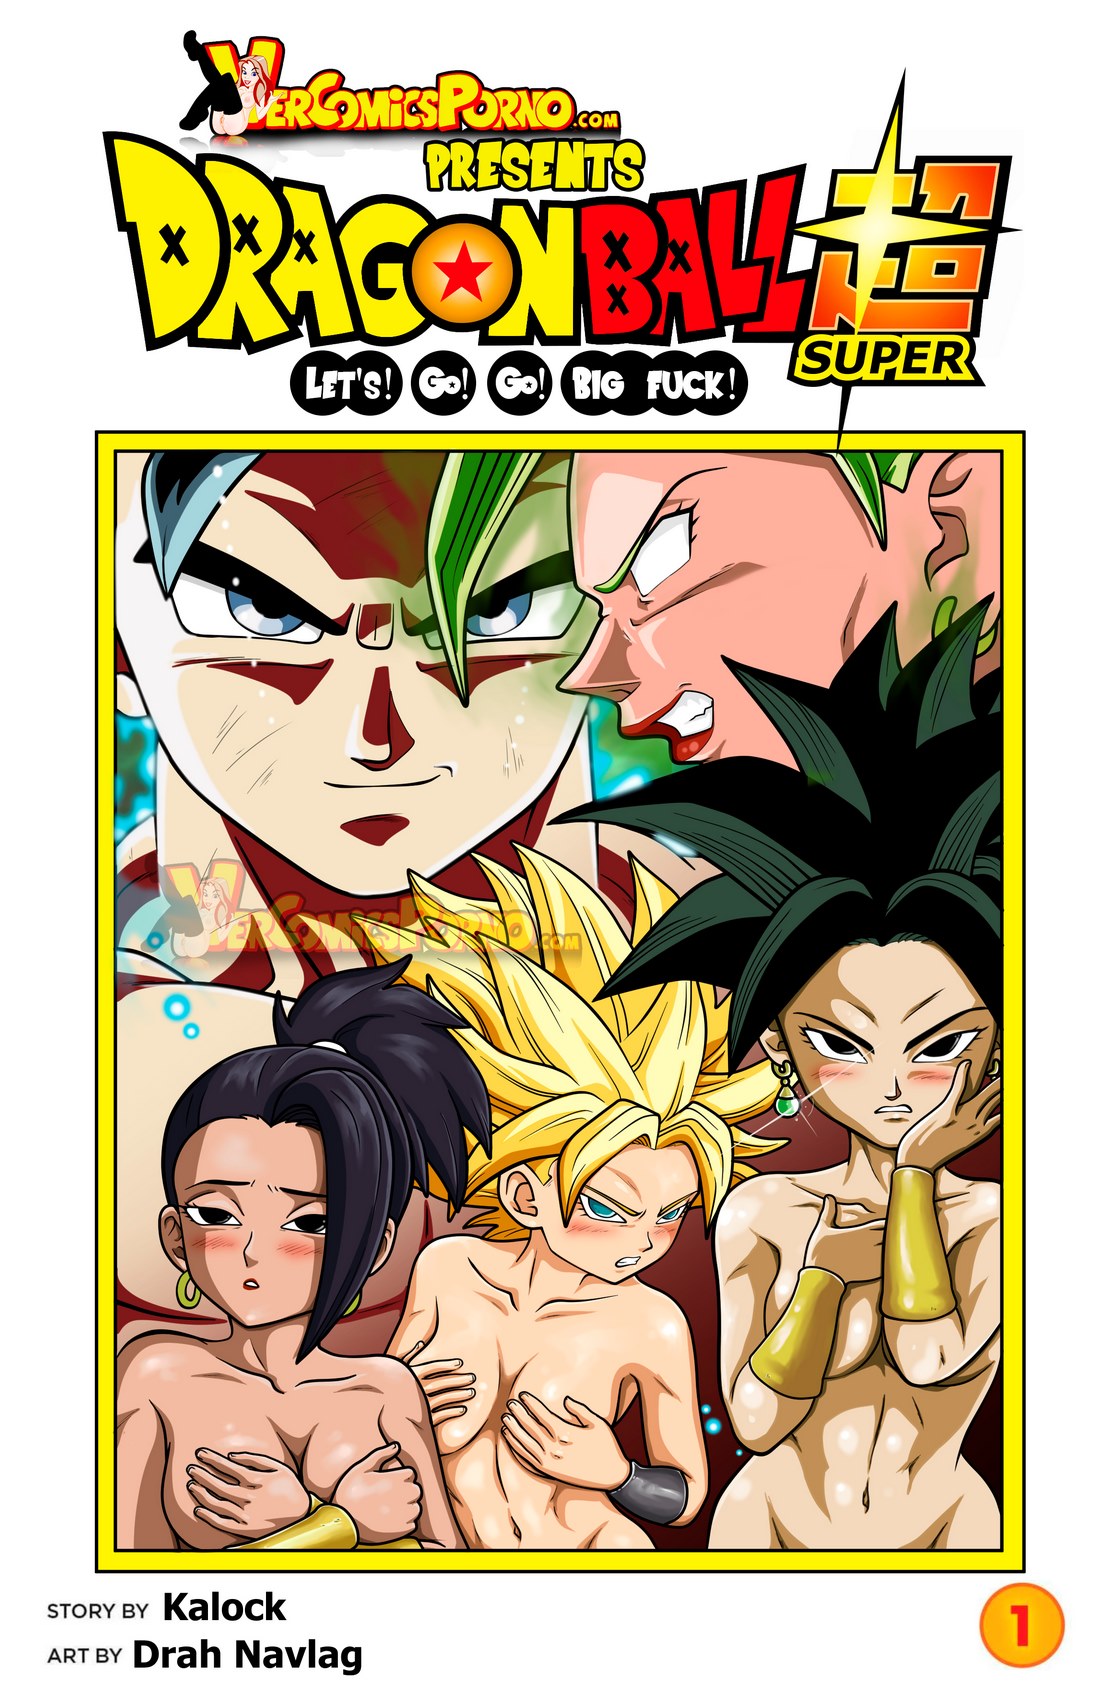 Dragon Ball Super- Lets Go Go Big Fuck - Porn Cartoon Comics